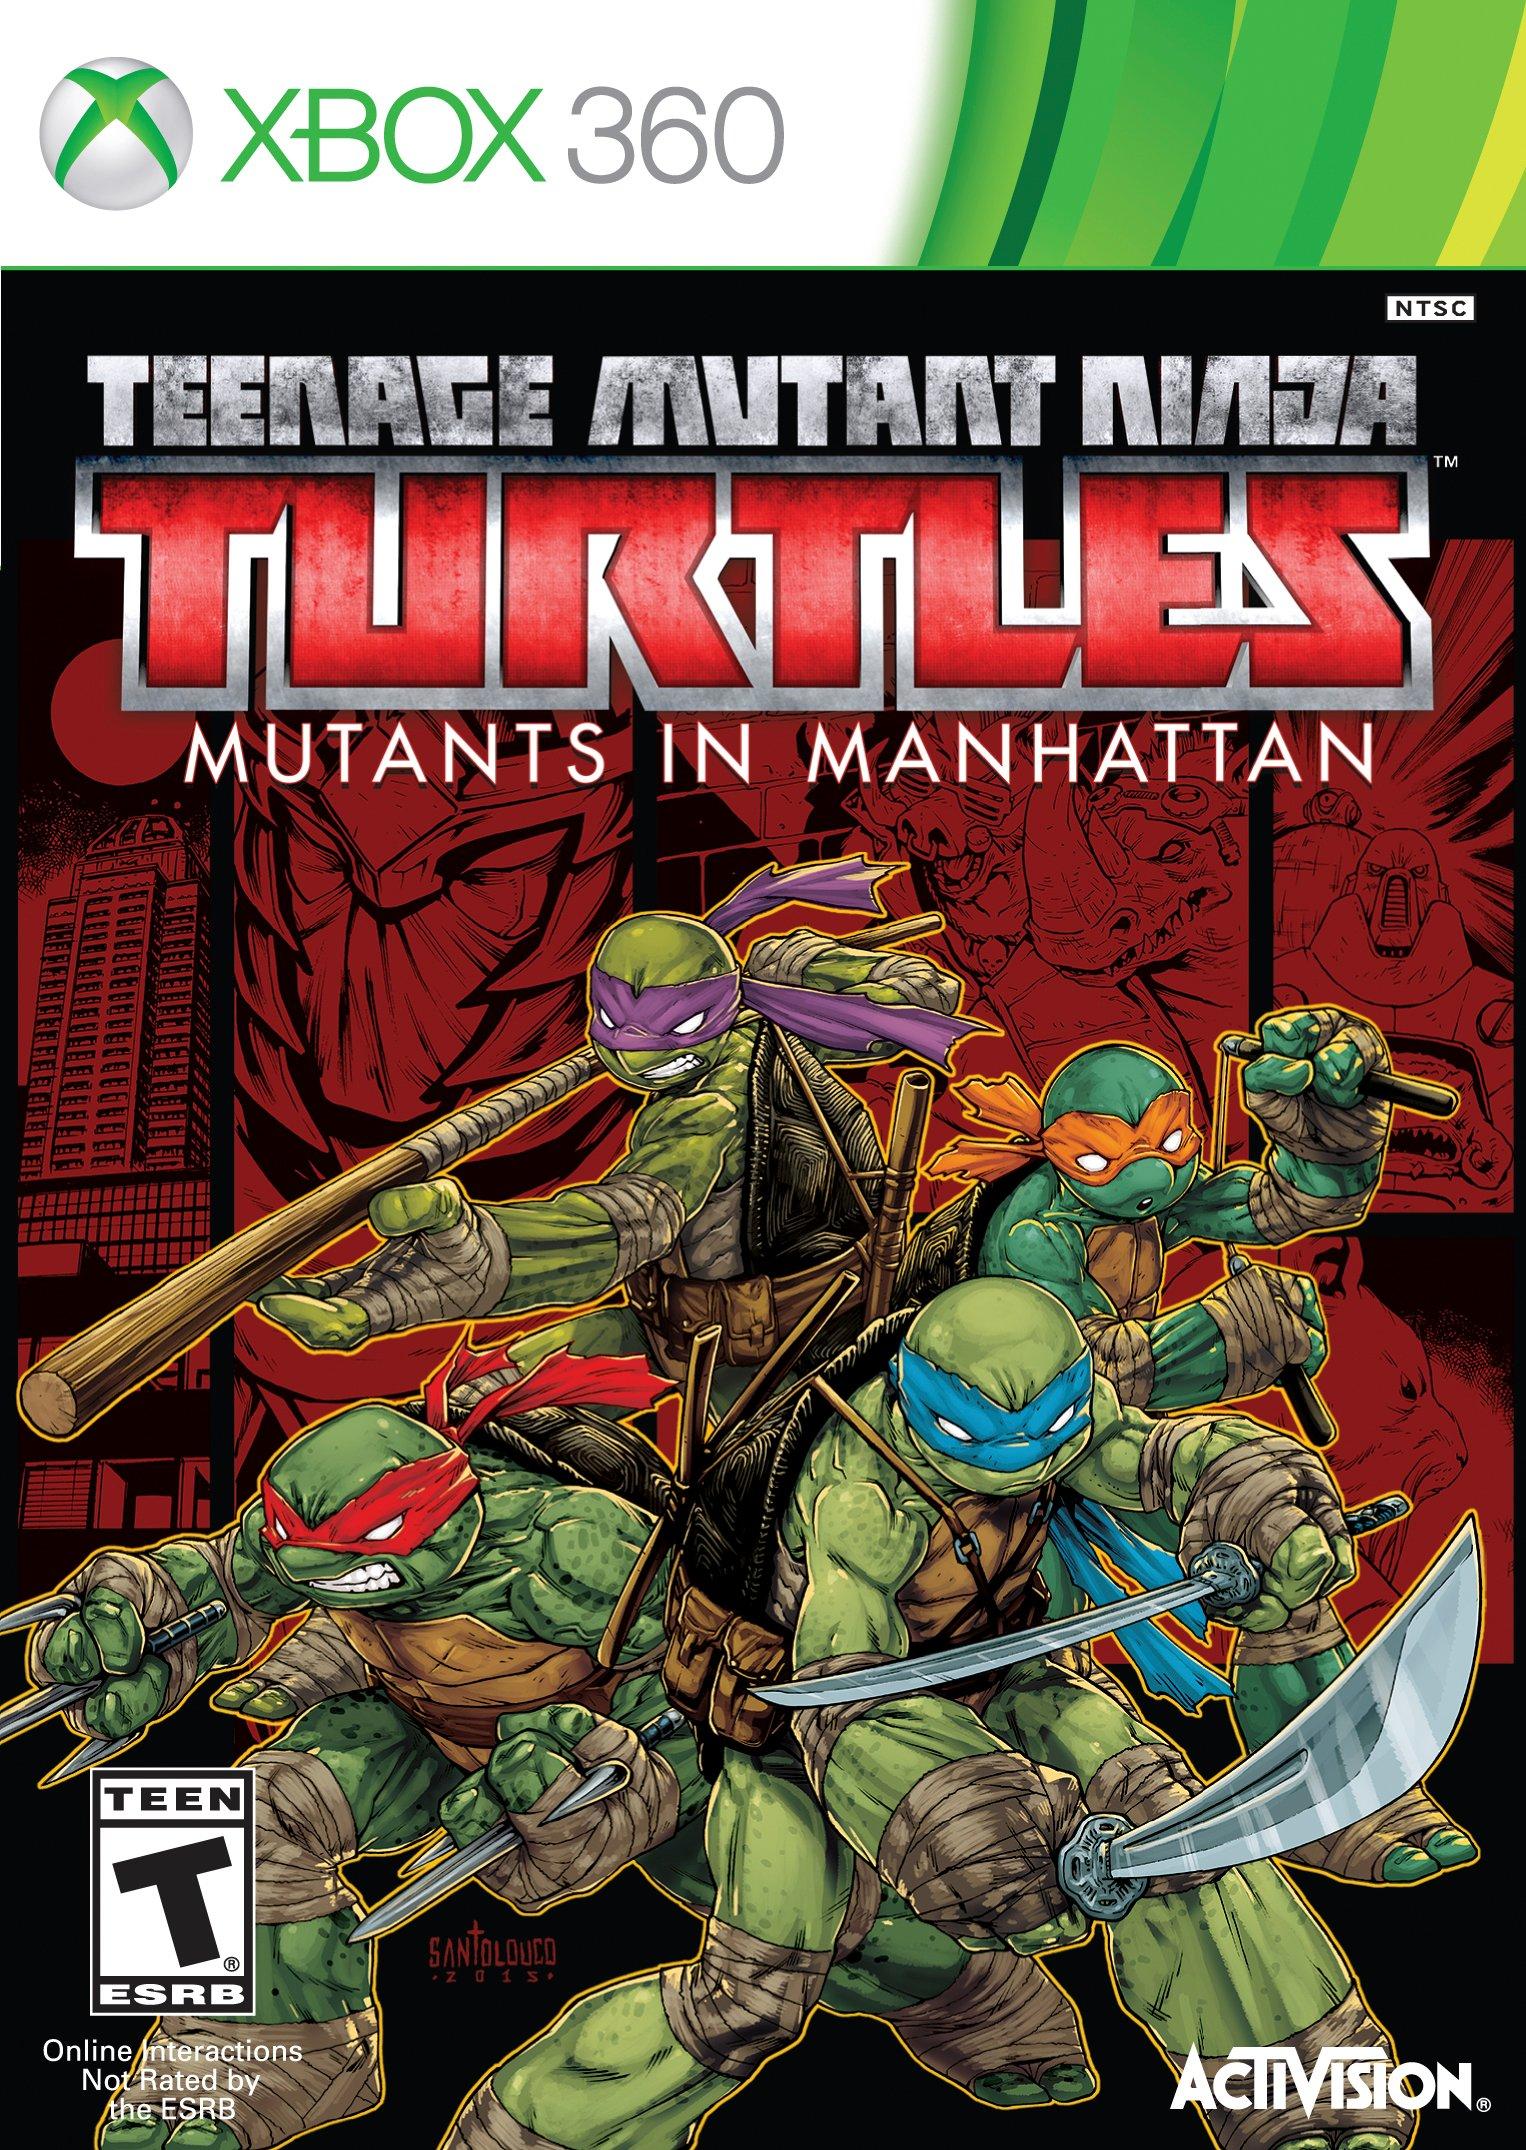 Buy Teenage Mutant Ninja Turtles Clothing online